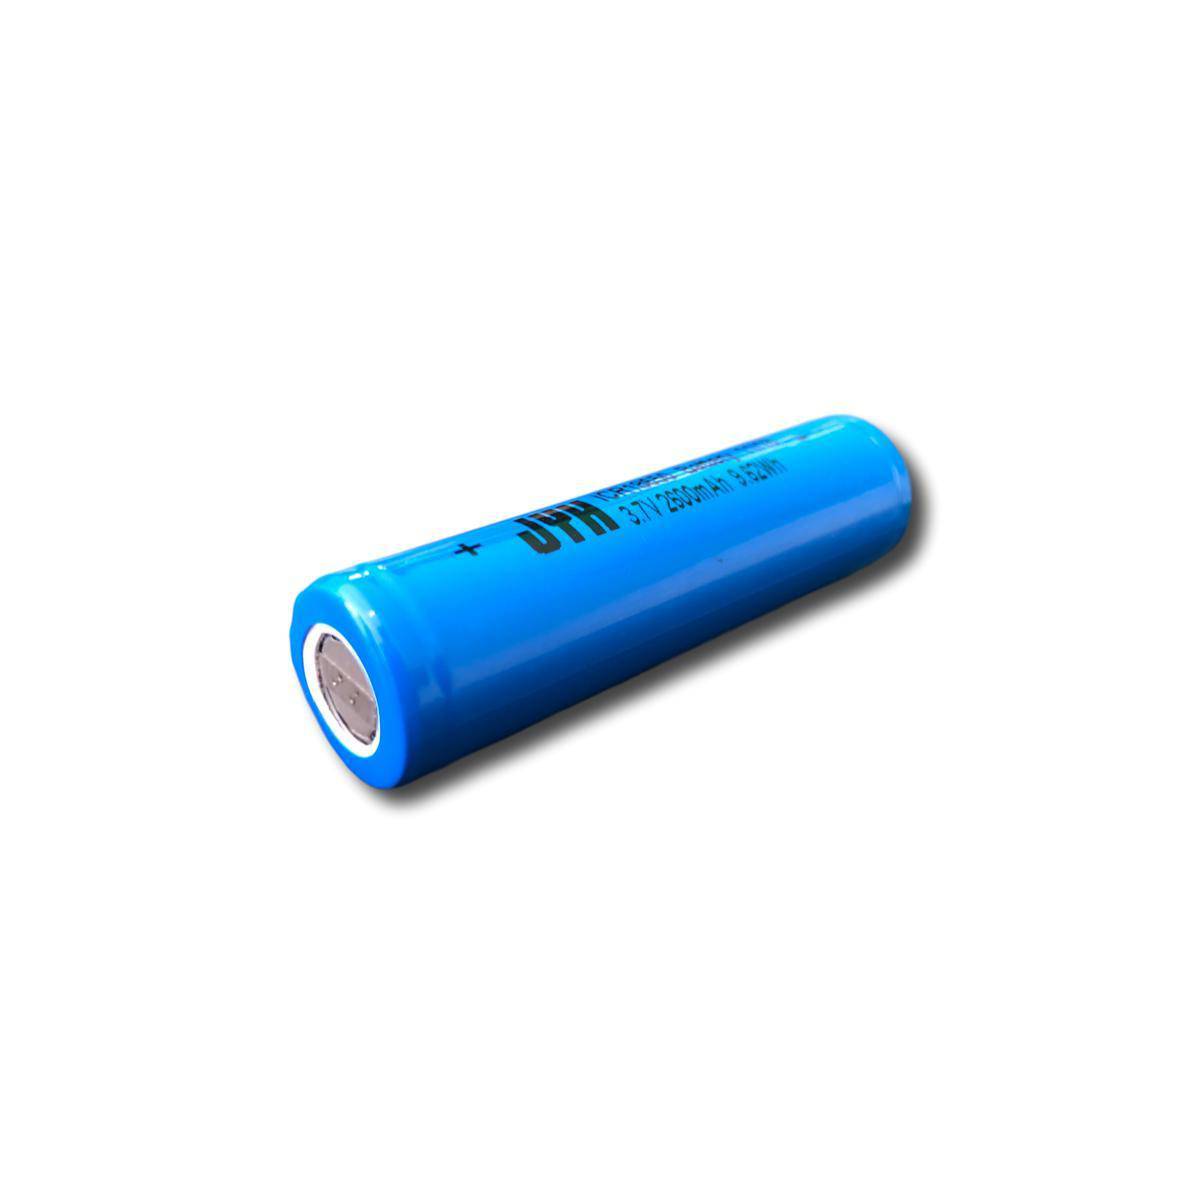 Batería para Fuente de luz led portátil Extra